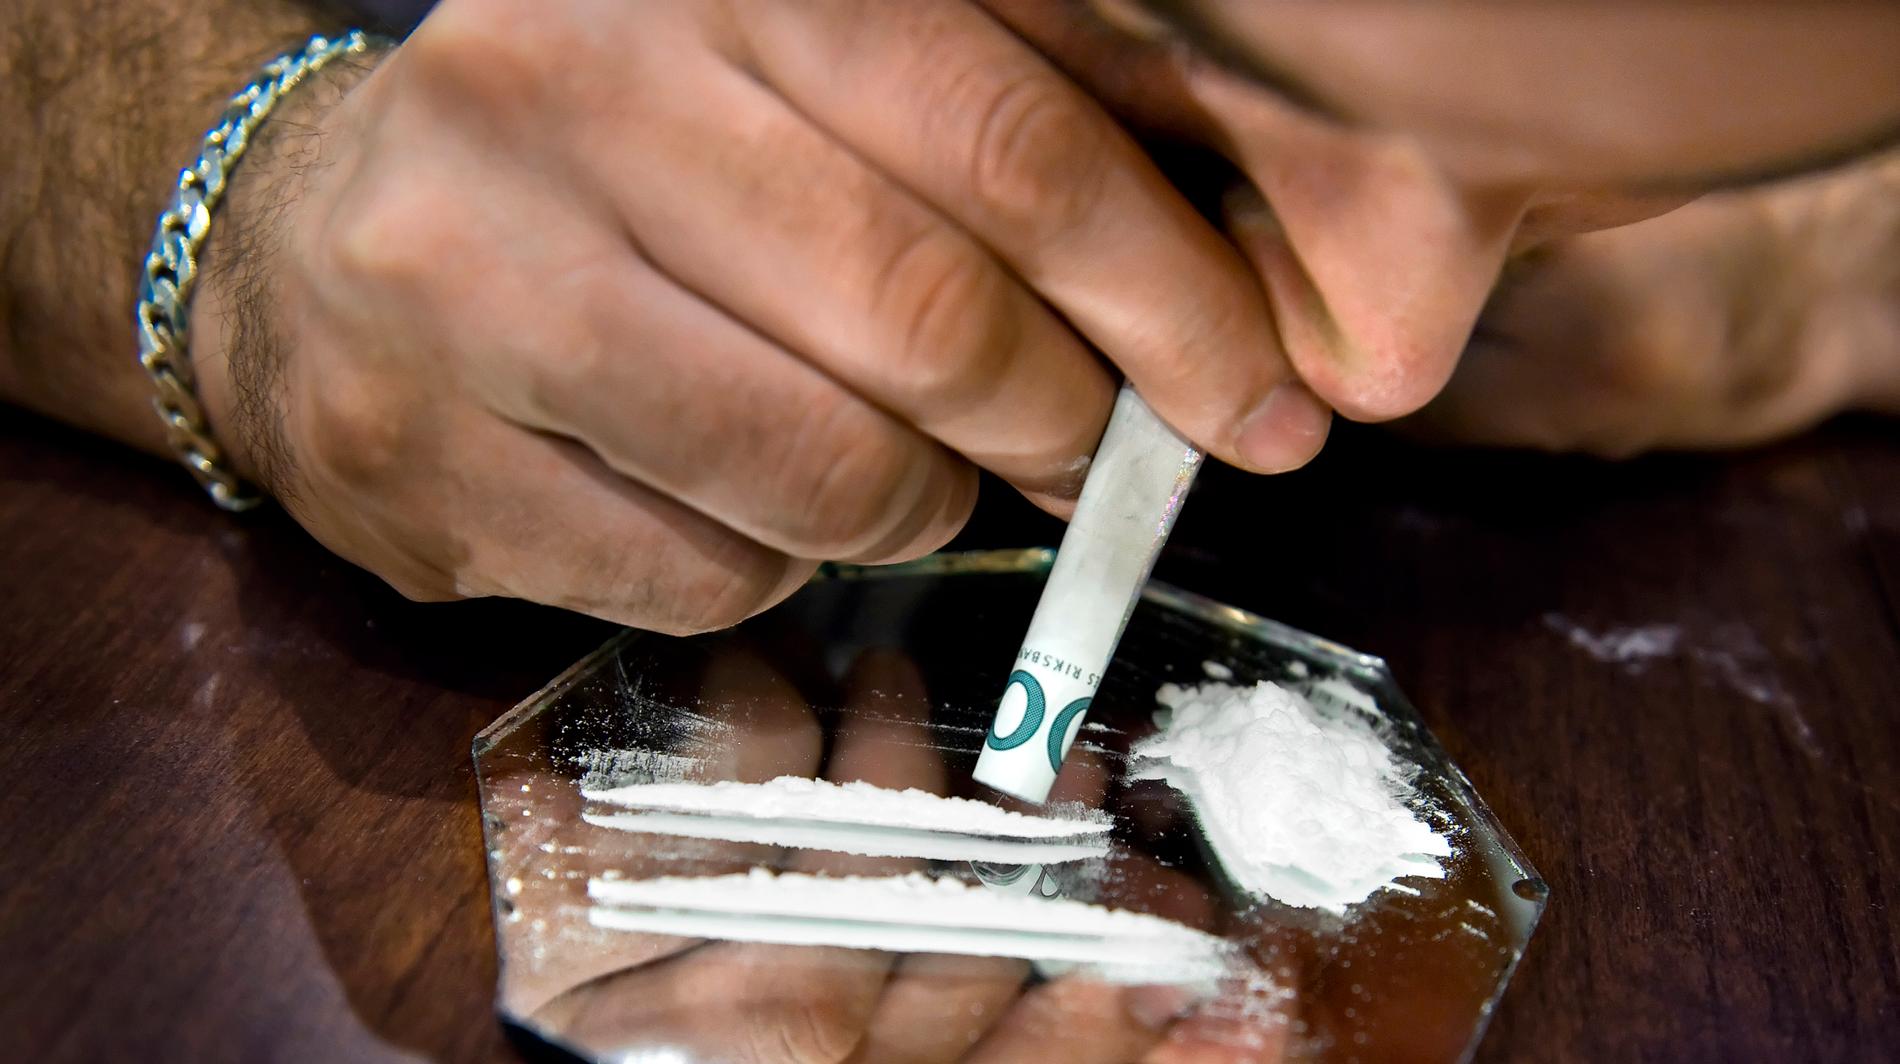 Gängkriminella livnär sig på att sälja knark, men köparna bor sällan i utsatta förorter. I veckan har Göteborgspolisen identifierat mer än 700 kokainköpare i välbärgade villaområden. 